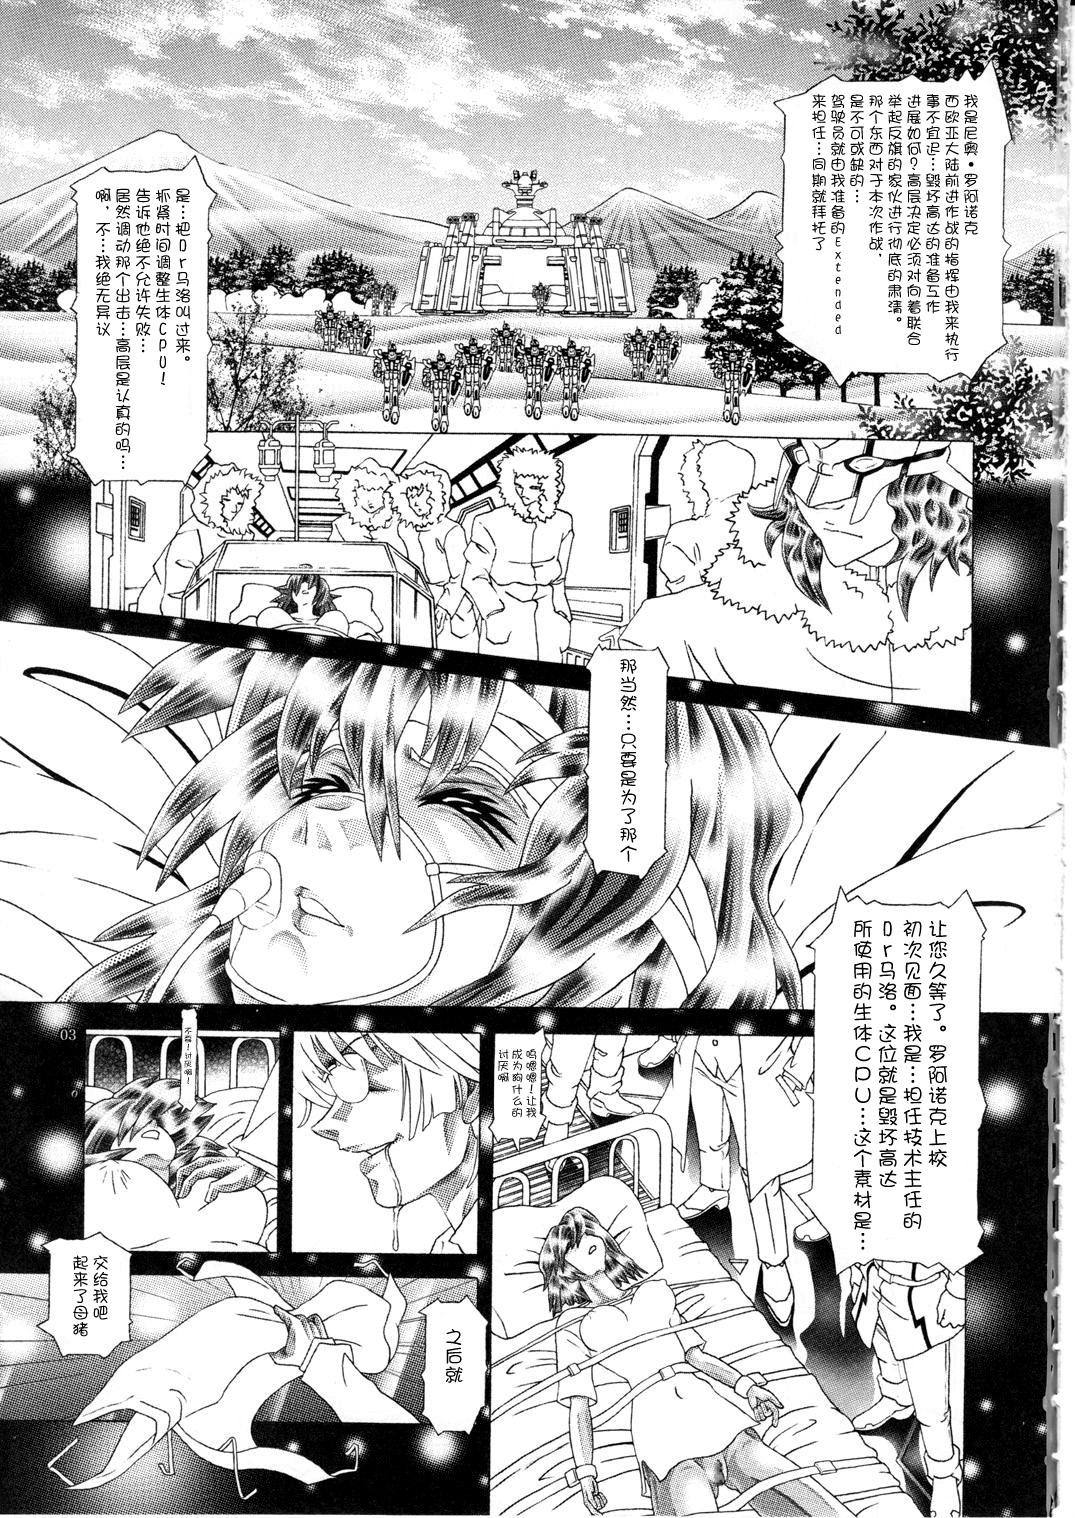 Hot Girls Getting Fucked (C77) [Kaki no Boo (Kakinomoto Utamaro)] RANDOM NUDE Vol.5 92 〔STELLAR LOUSSIER〕 (Gundam Seed Destiny)【chinese】 - Gundam seed destiny Sapphic Erotica - Page 4